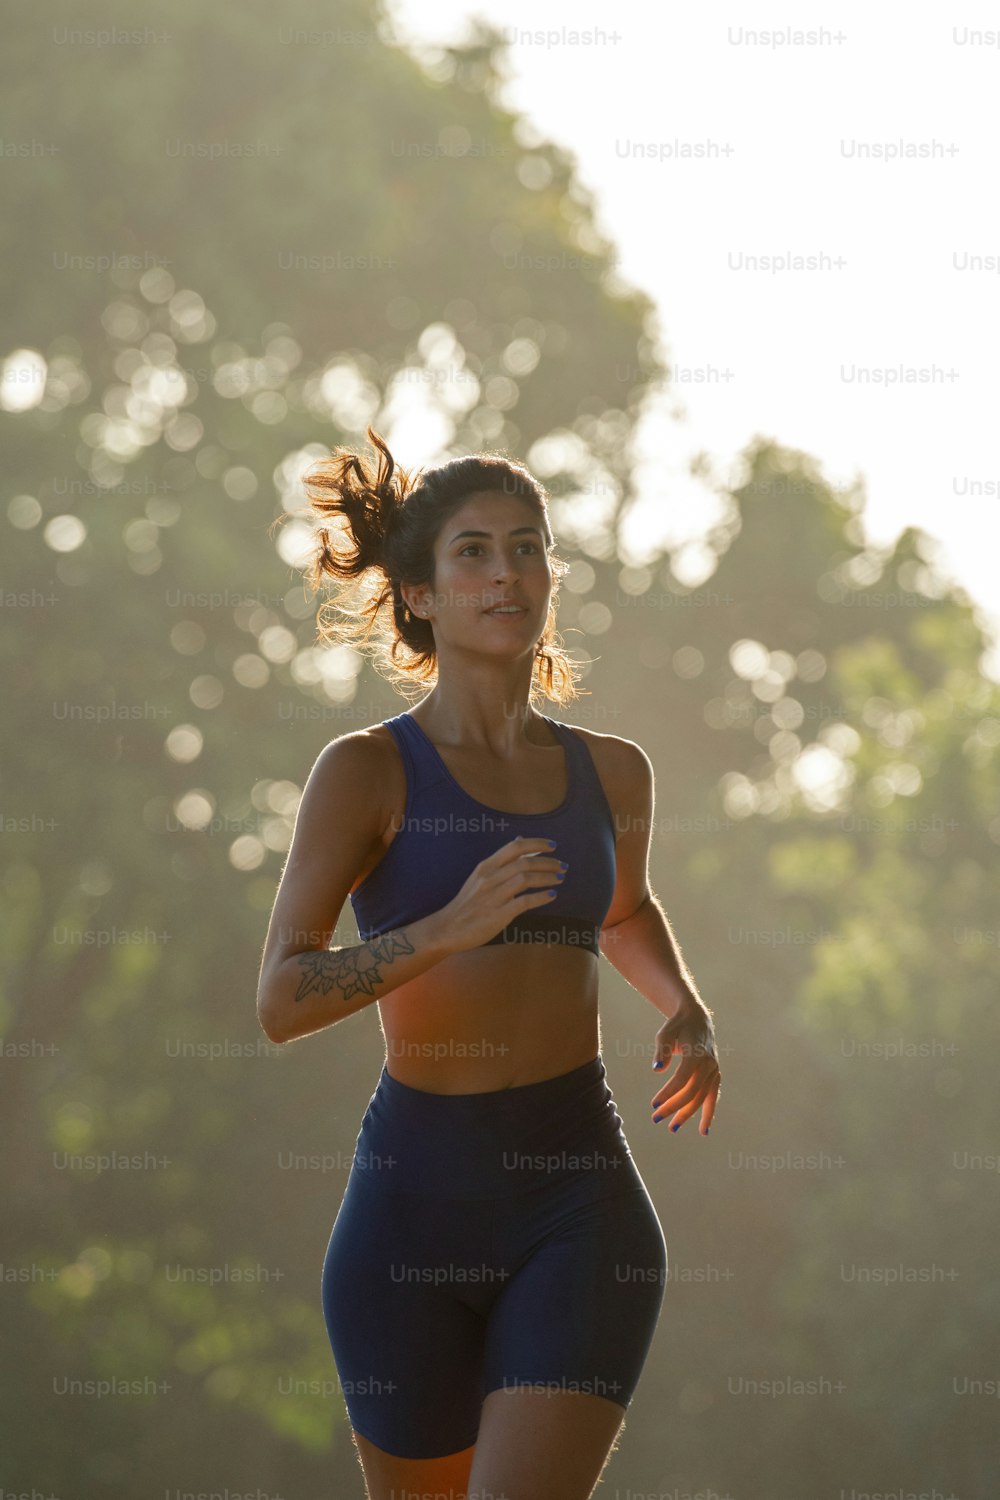 Eine Frau läuft im blauen Sportanzug